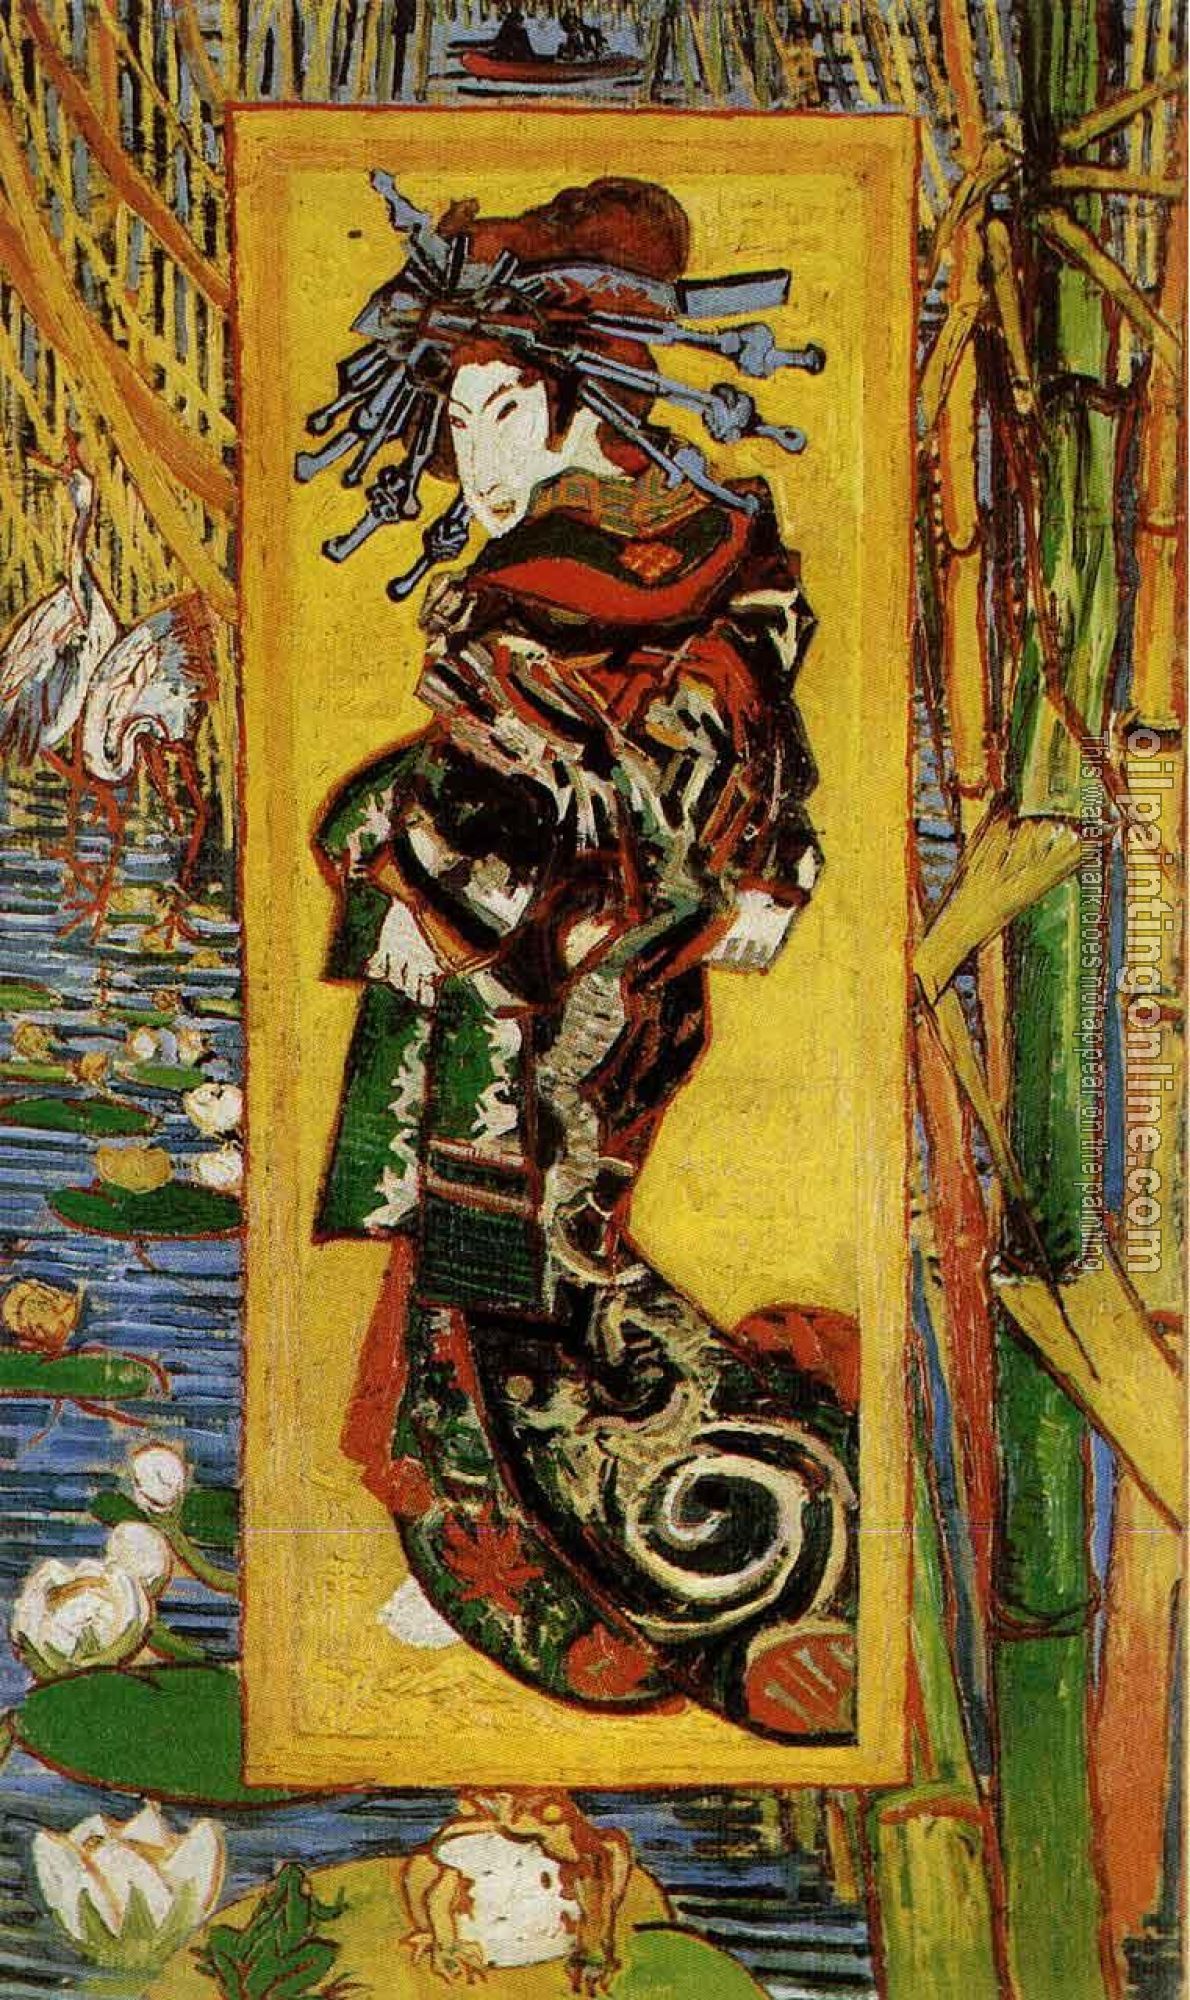 Gogh, Vincent van - Japonaiserie, Oiran